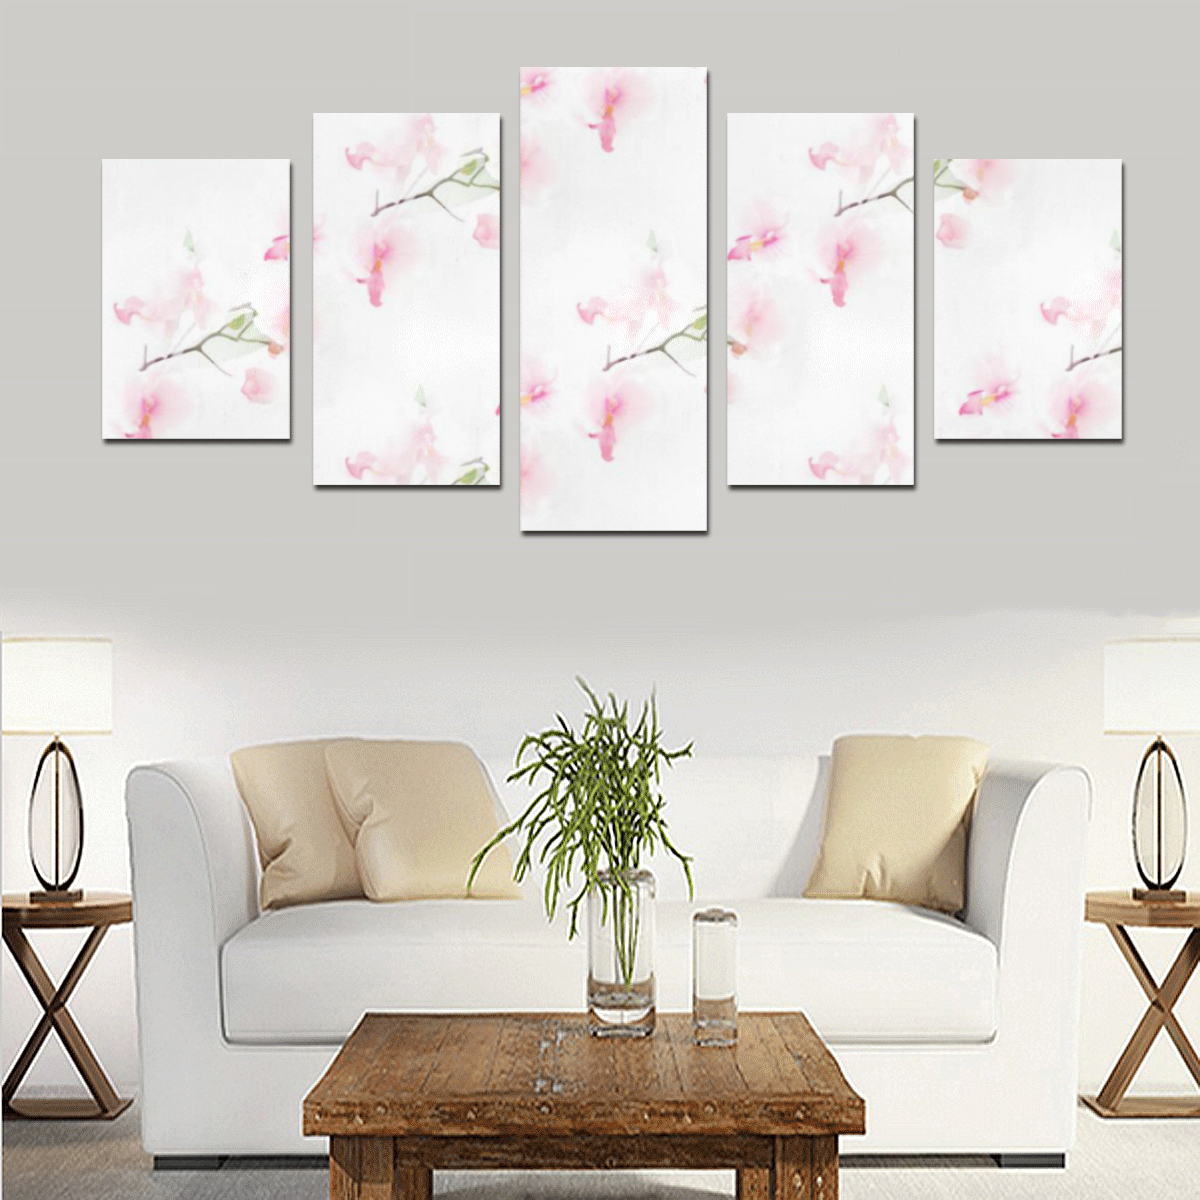 Pattern Orchidées Canvas Print Sets D (No Frame)